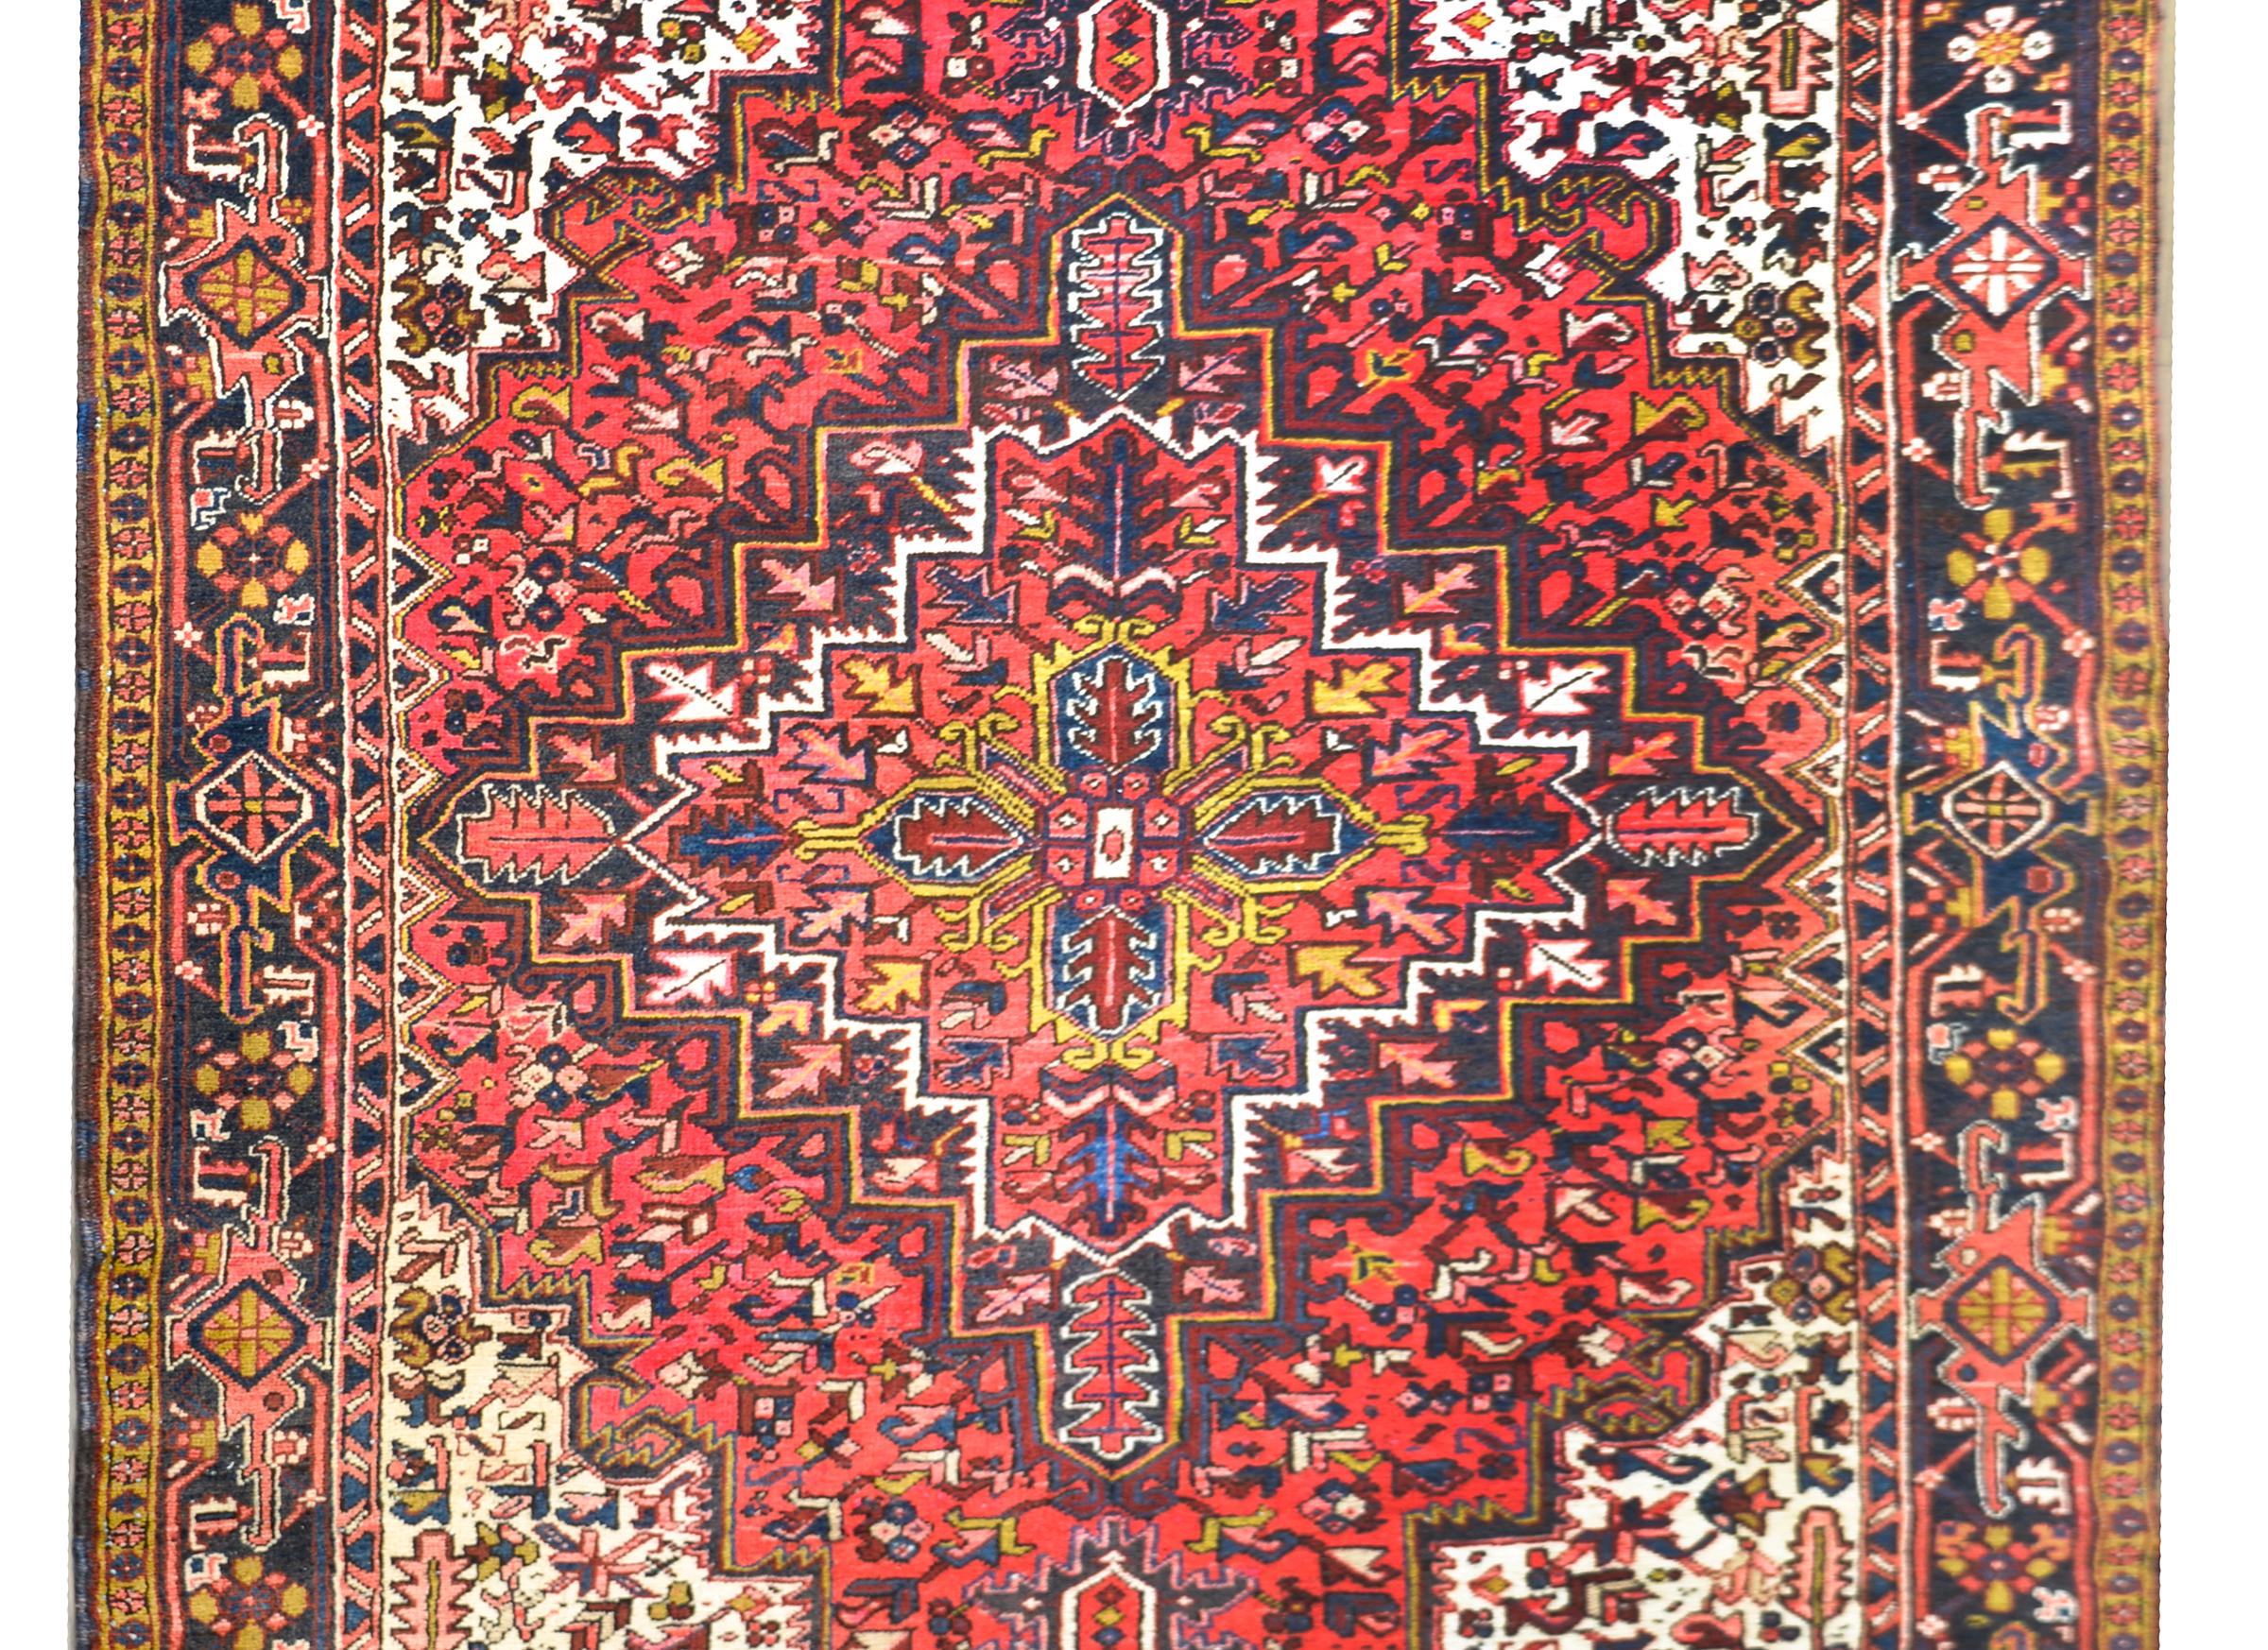 Ein wundervoller alter persischer Hertz-Teppich mit einem traditionellen floral gemusterten Medaillon vor einem floral und mit Ranken gemusterten Feld, umgeben von einer stilisierten floral und mit Ranken gemusterten Bordüre.